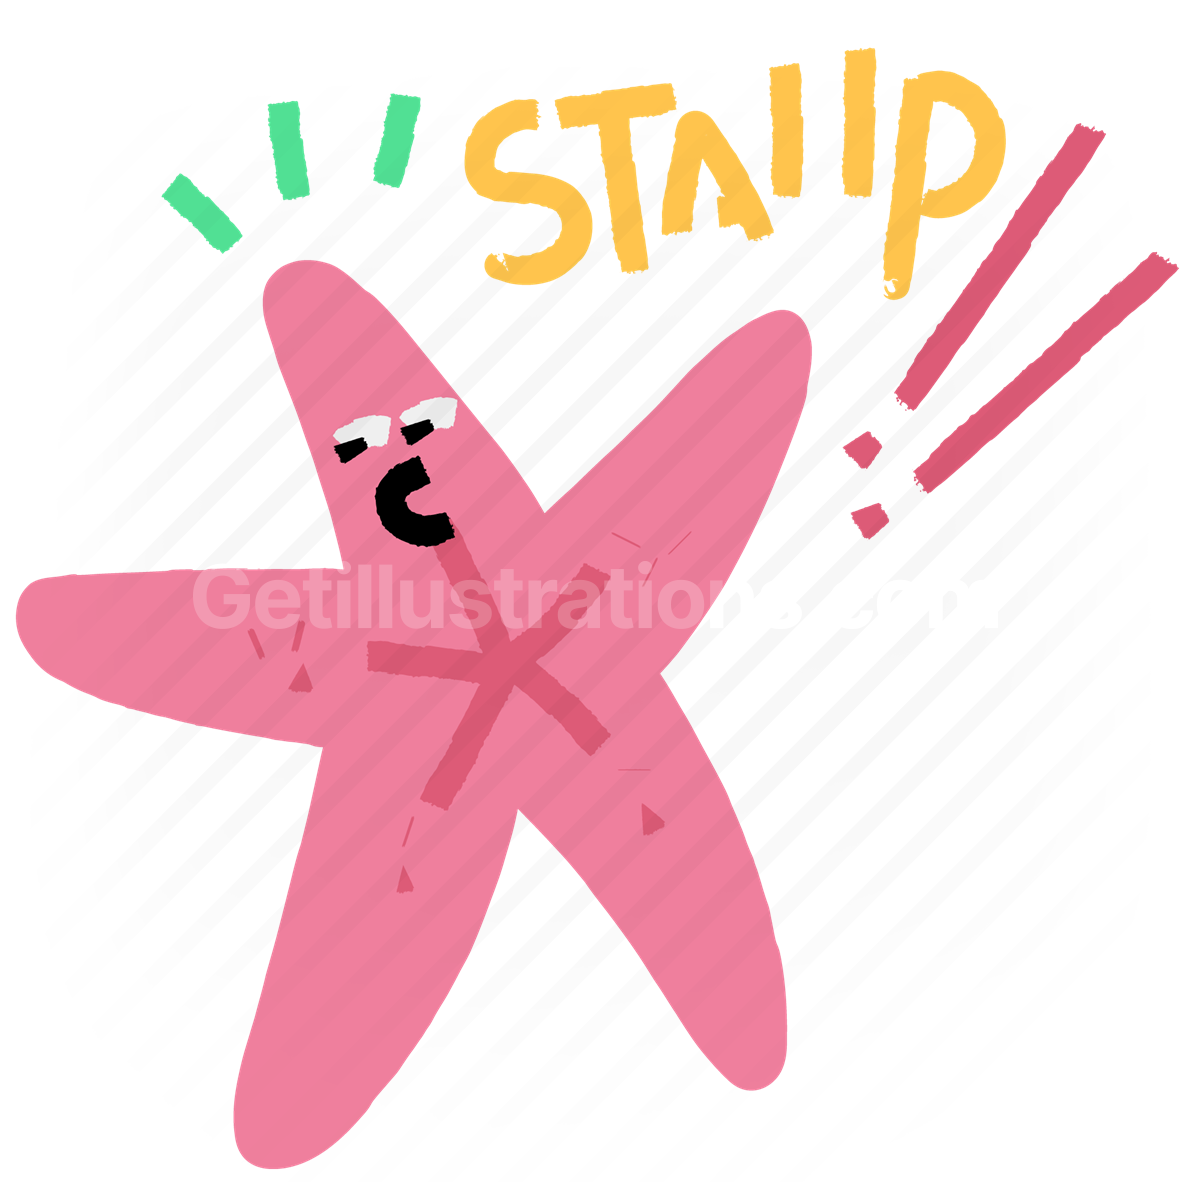 stop, starfish, animal, wildlife, sticker, character